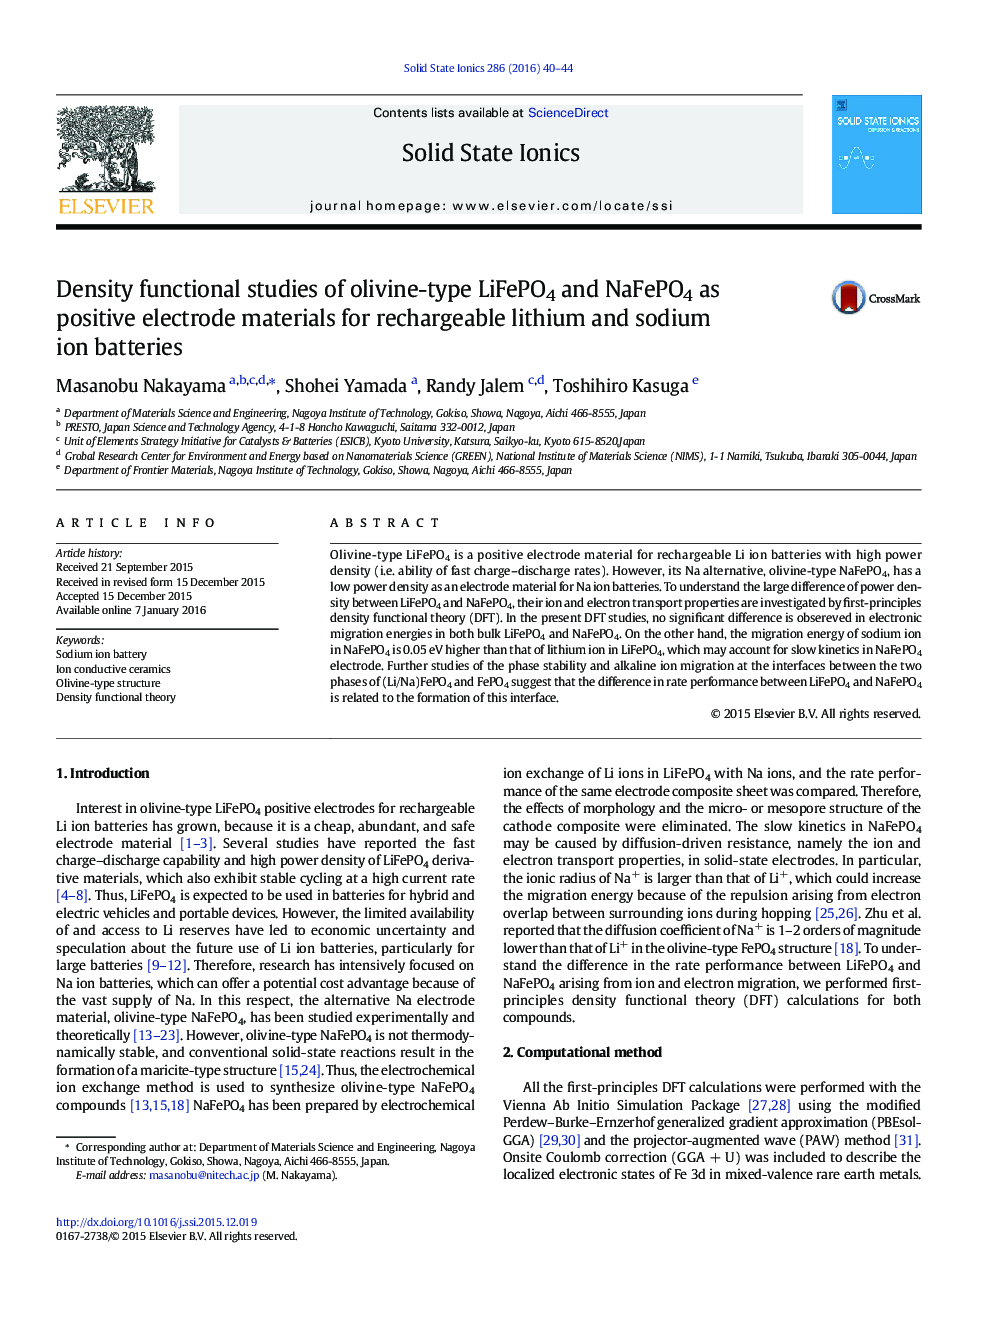 مطالعات تابعی چگالی از Li-FePO4 و NaFePO4 نوع الیوین به عنوان مواد الکترود مثبت برای باتری های یون لیتیوم و سدیم قابل شارژ